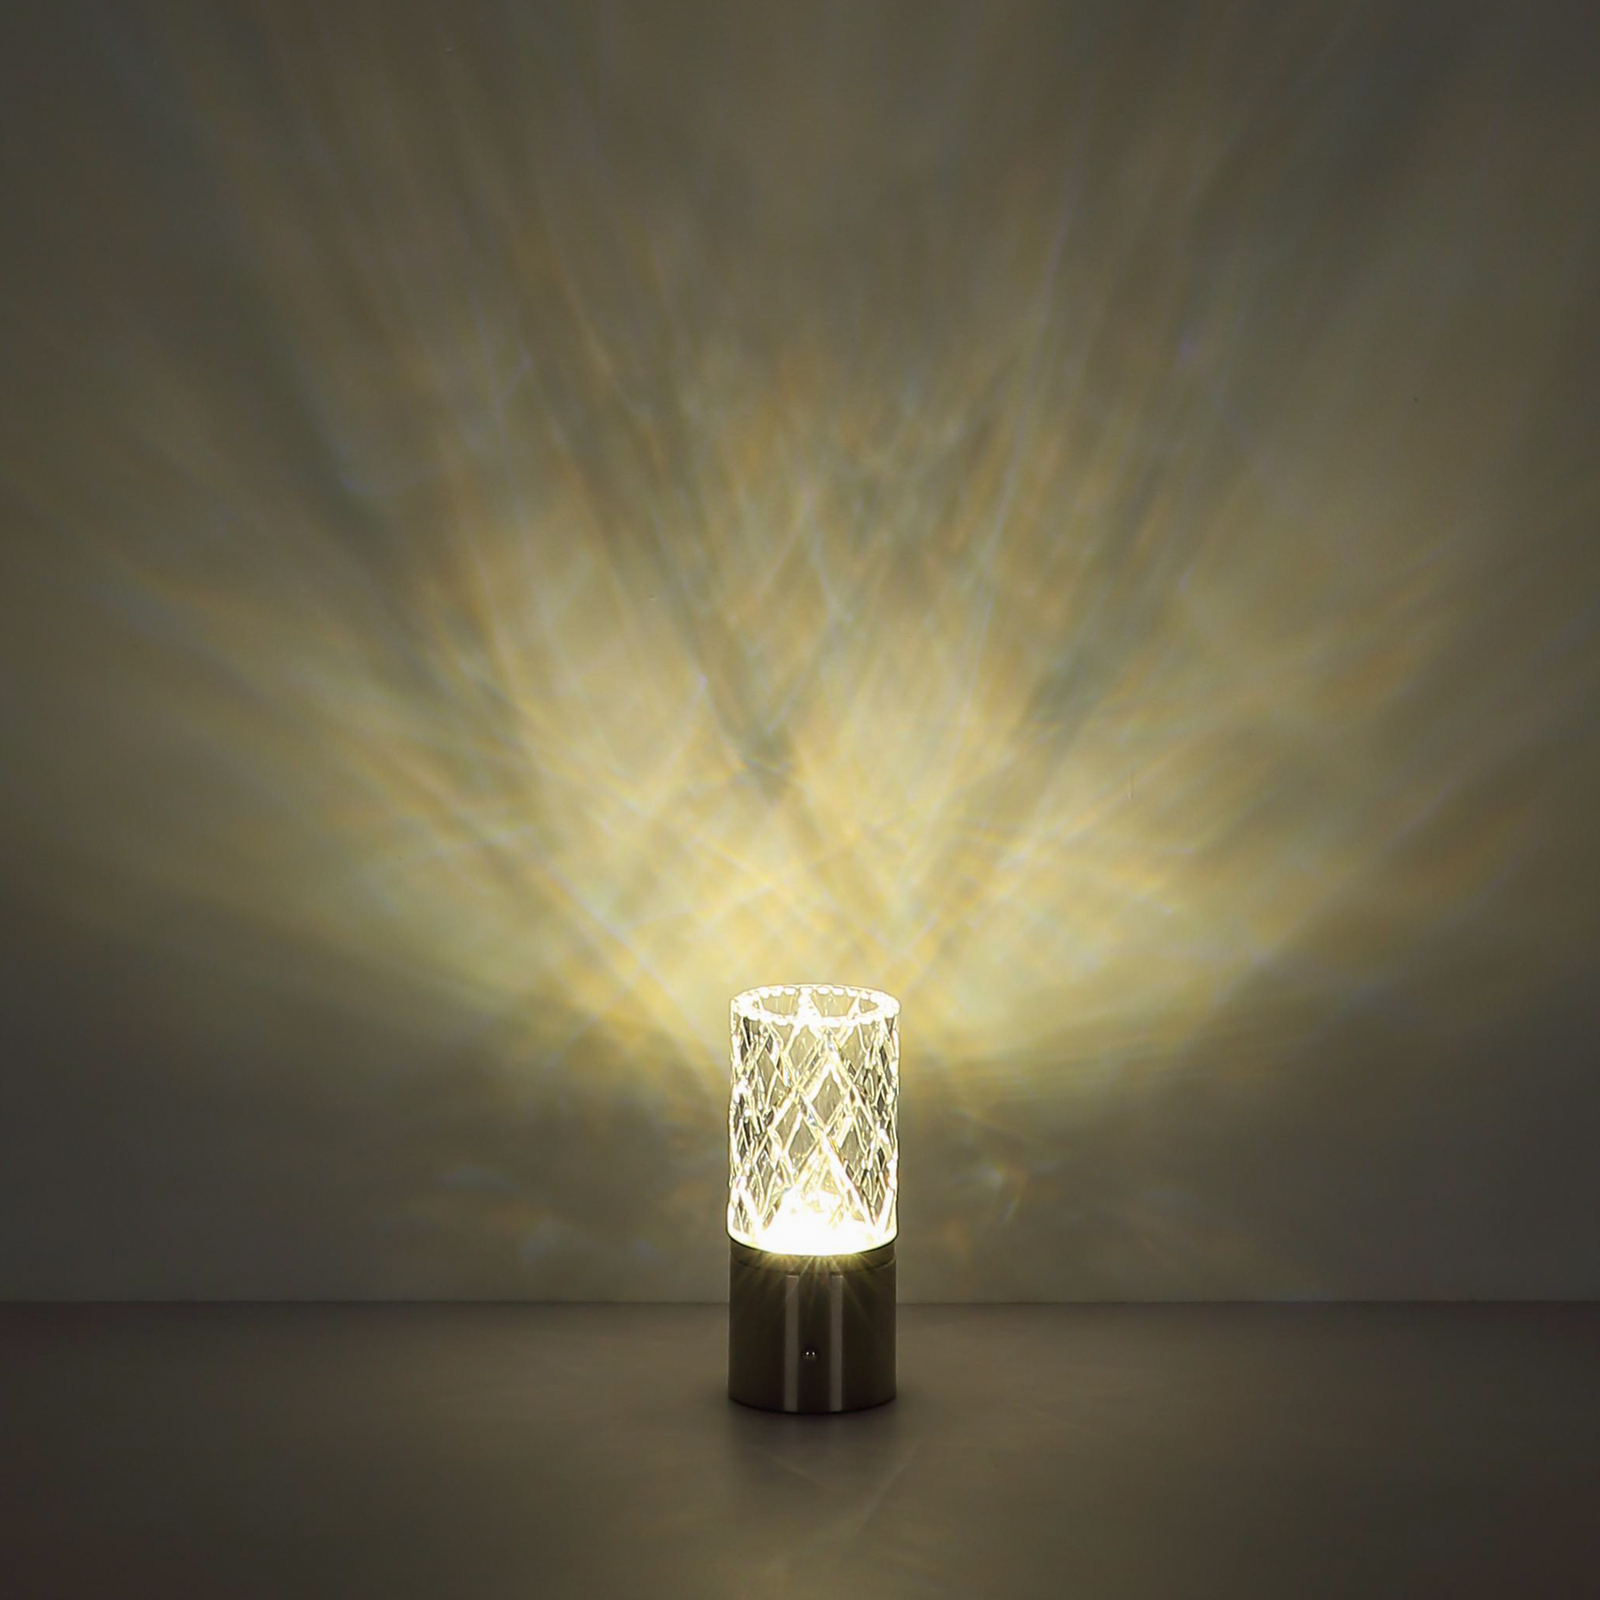 Lampe de table LED rechargeable Lunki, noir mat, hauteur 19 cm, CCT